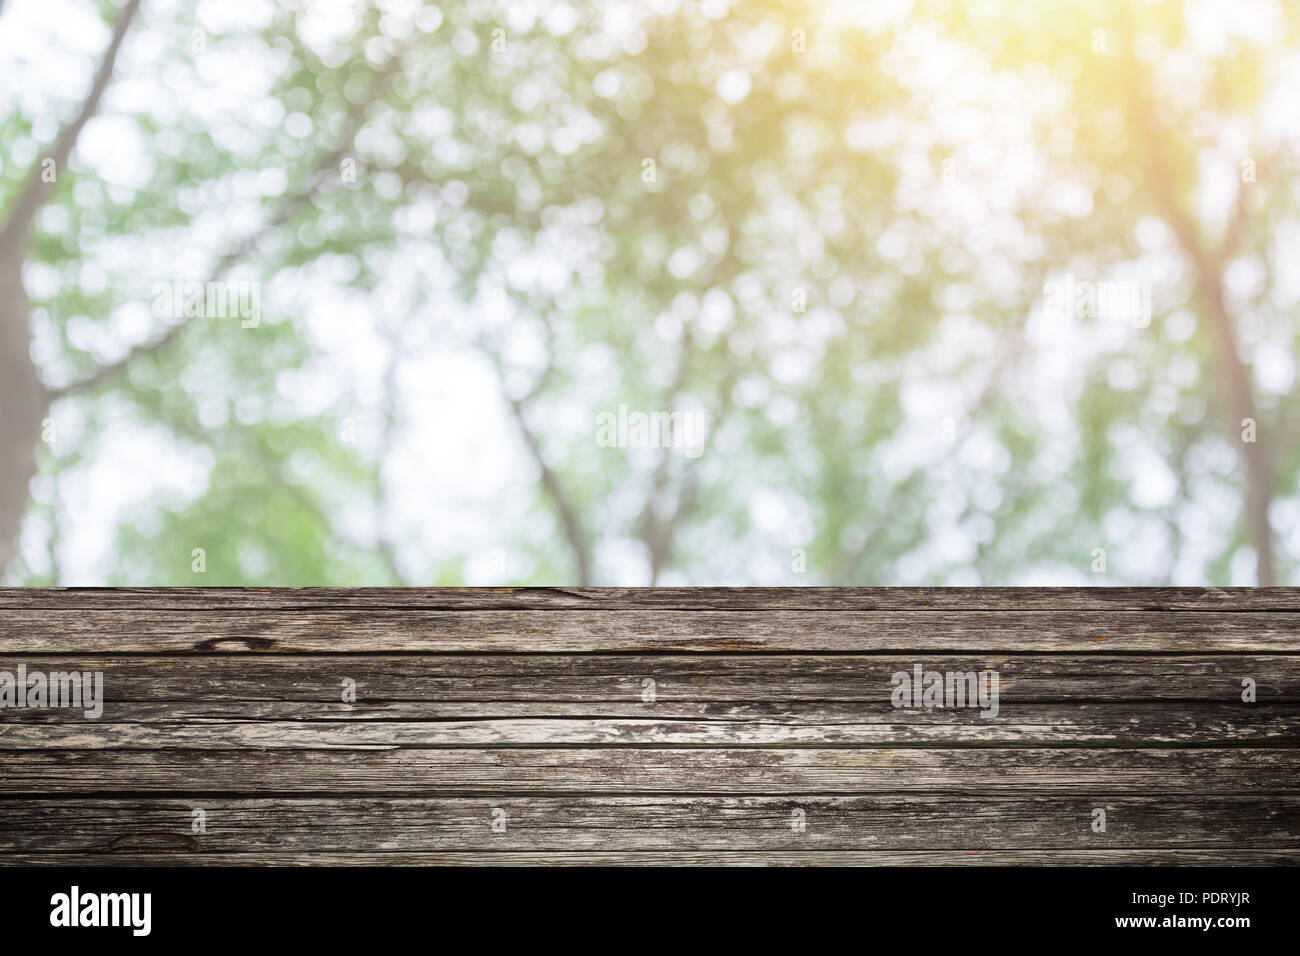 Holztisch Vordergrund mit blur grünen Wald Hintergrund Design für die Anzeige der Natur Produkte Stockfoto